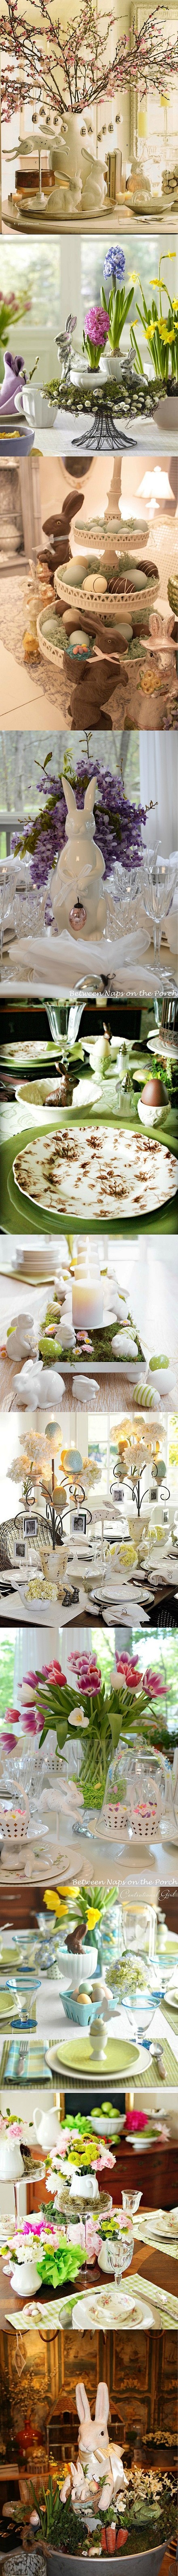 #婚礼布置#清新淡雅的复活节鲜花餐桌布置...